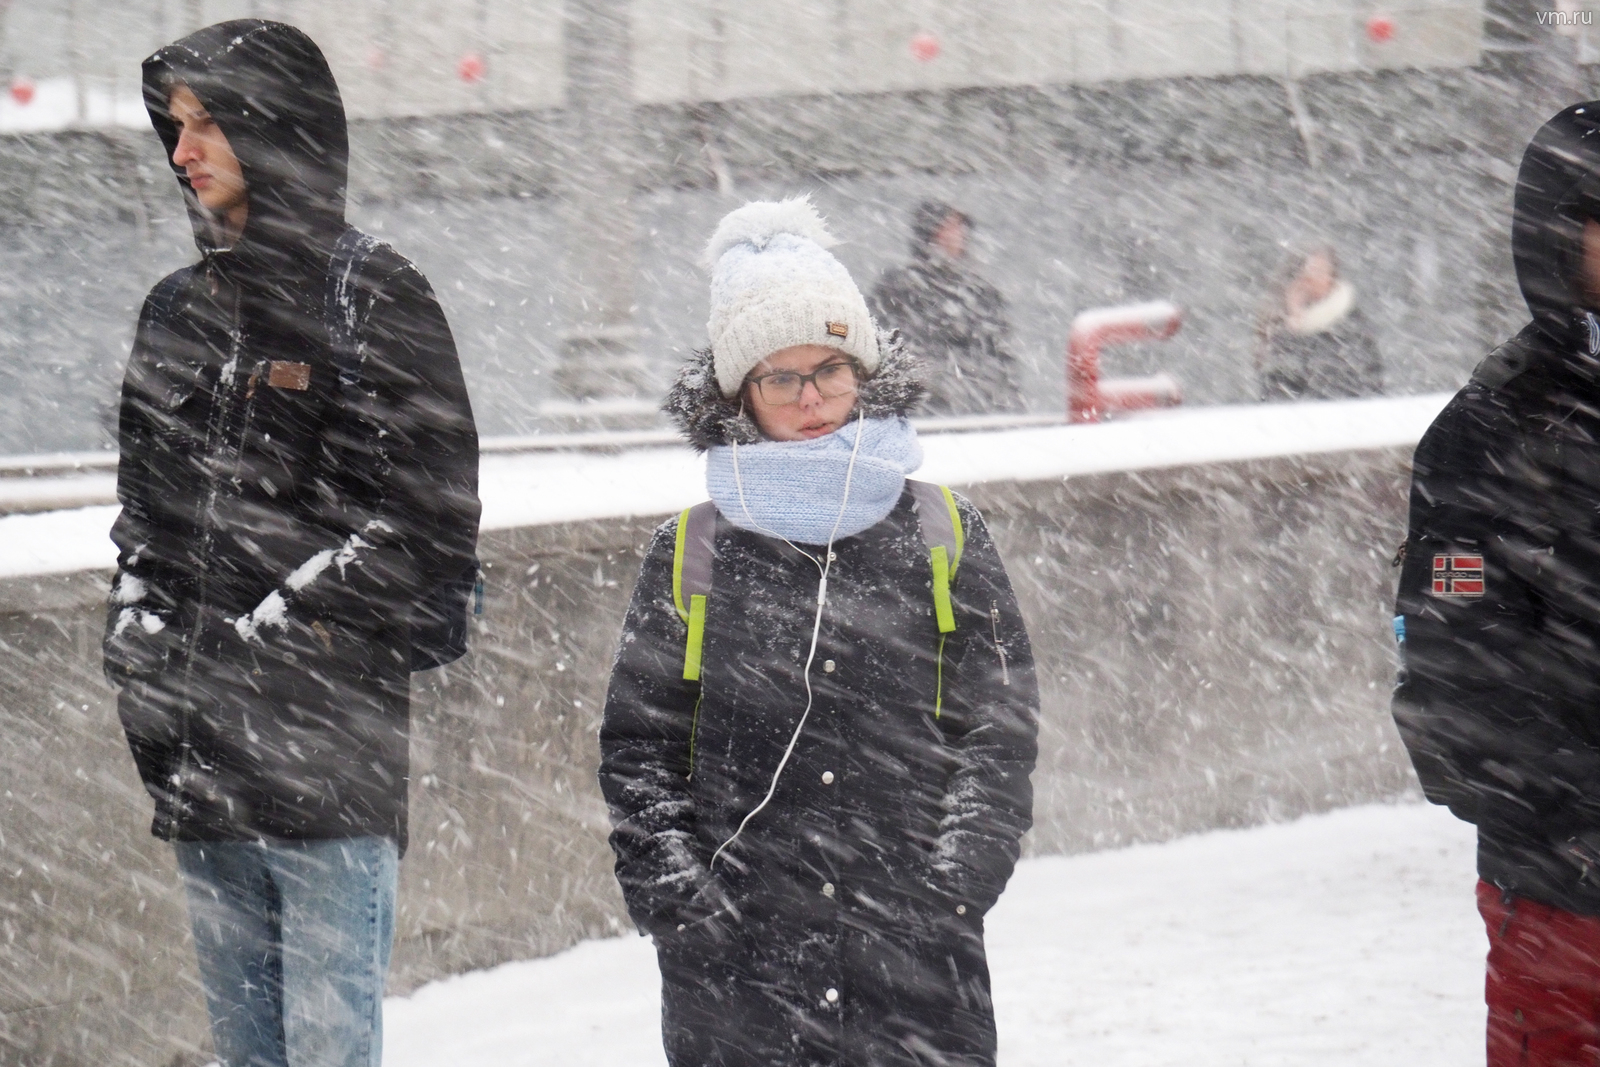 Жителей города предупредили о снежных заносах ожидаемых на дорогах